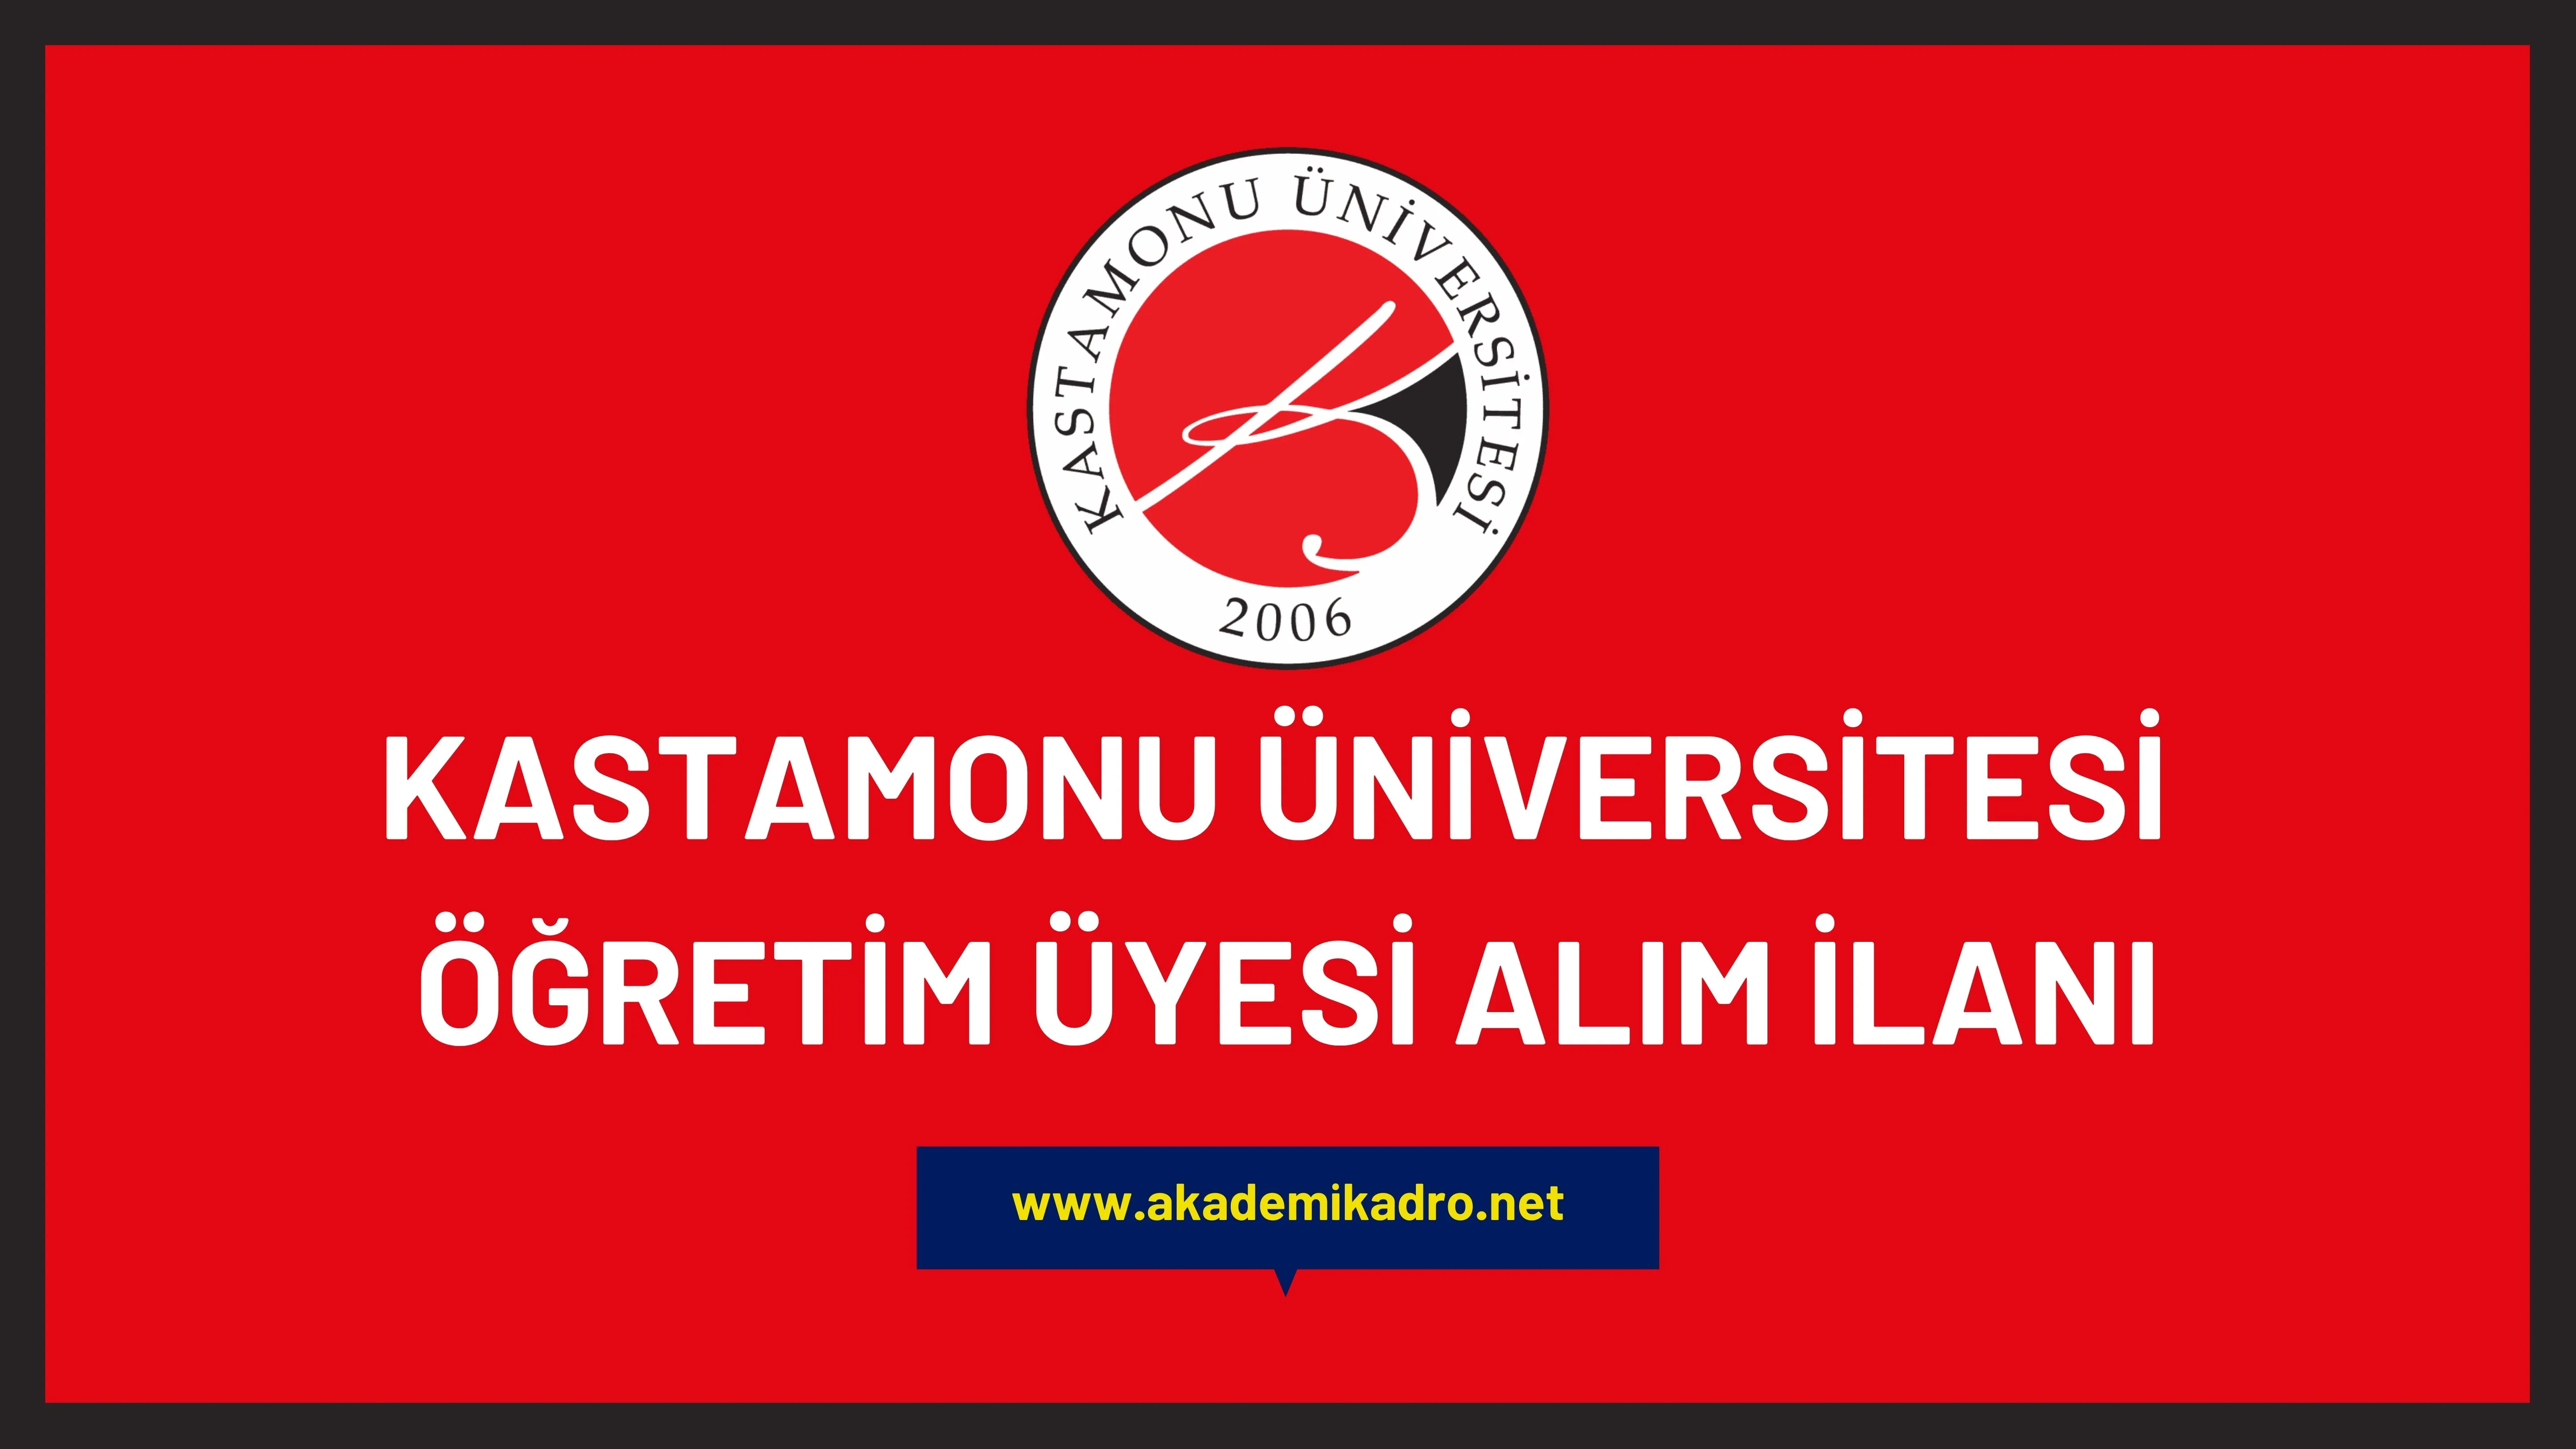 Kastamonu Üniversitesi çeşitli branşlarda 12 öğretim üyesi alacak.